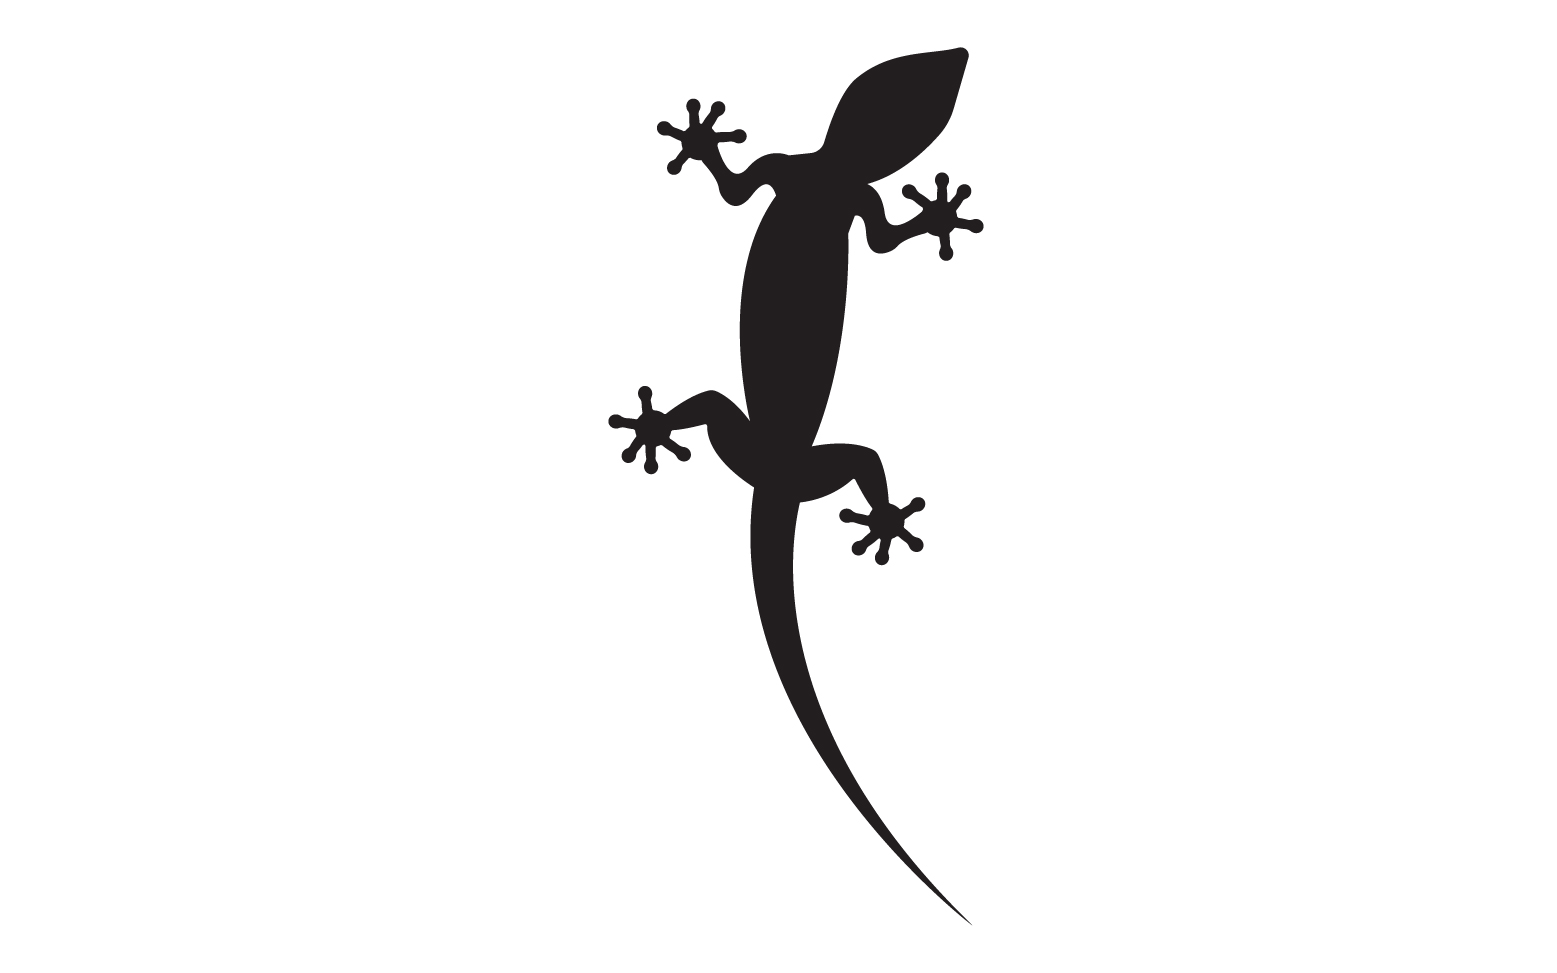 Lizard chameleon home lizard logo v64